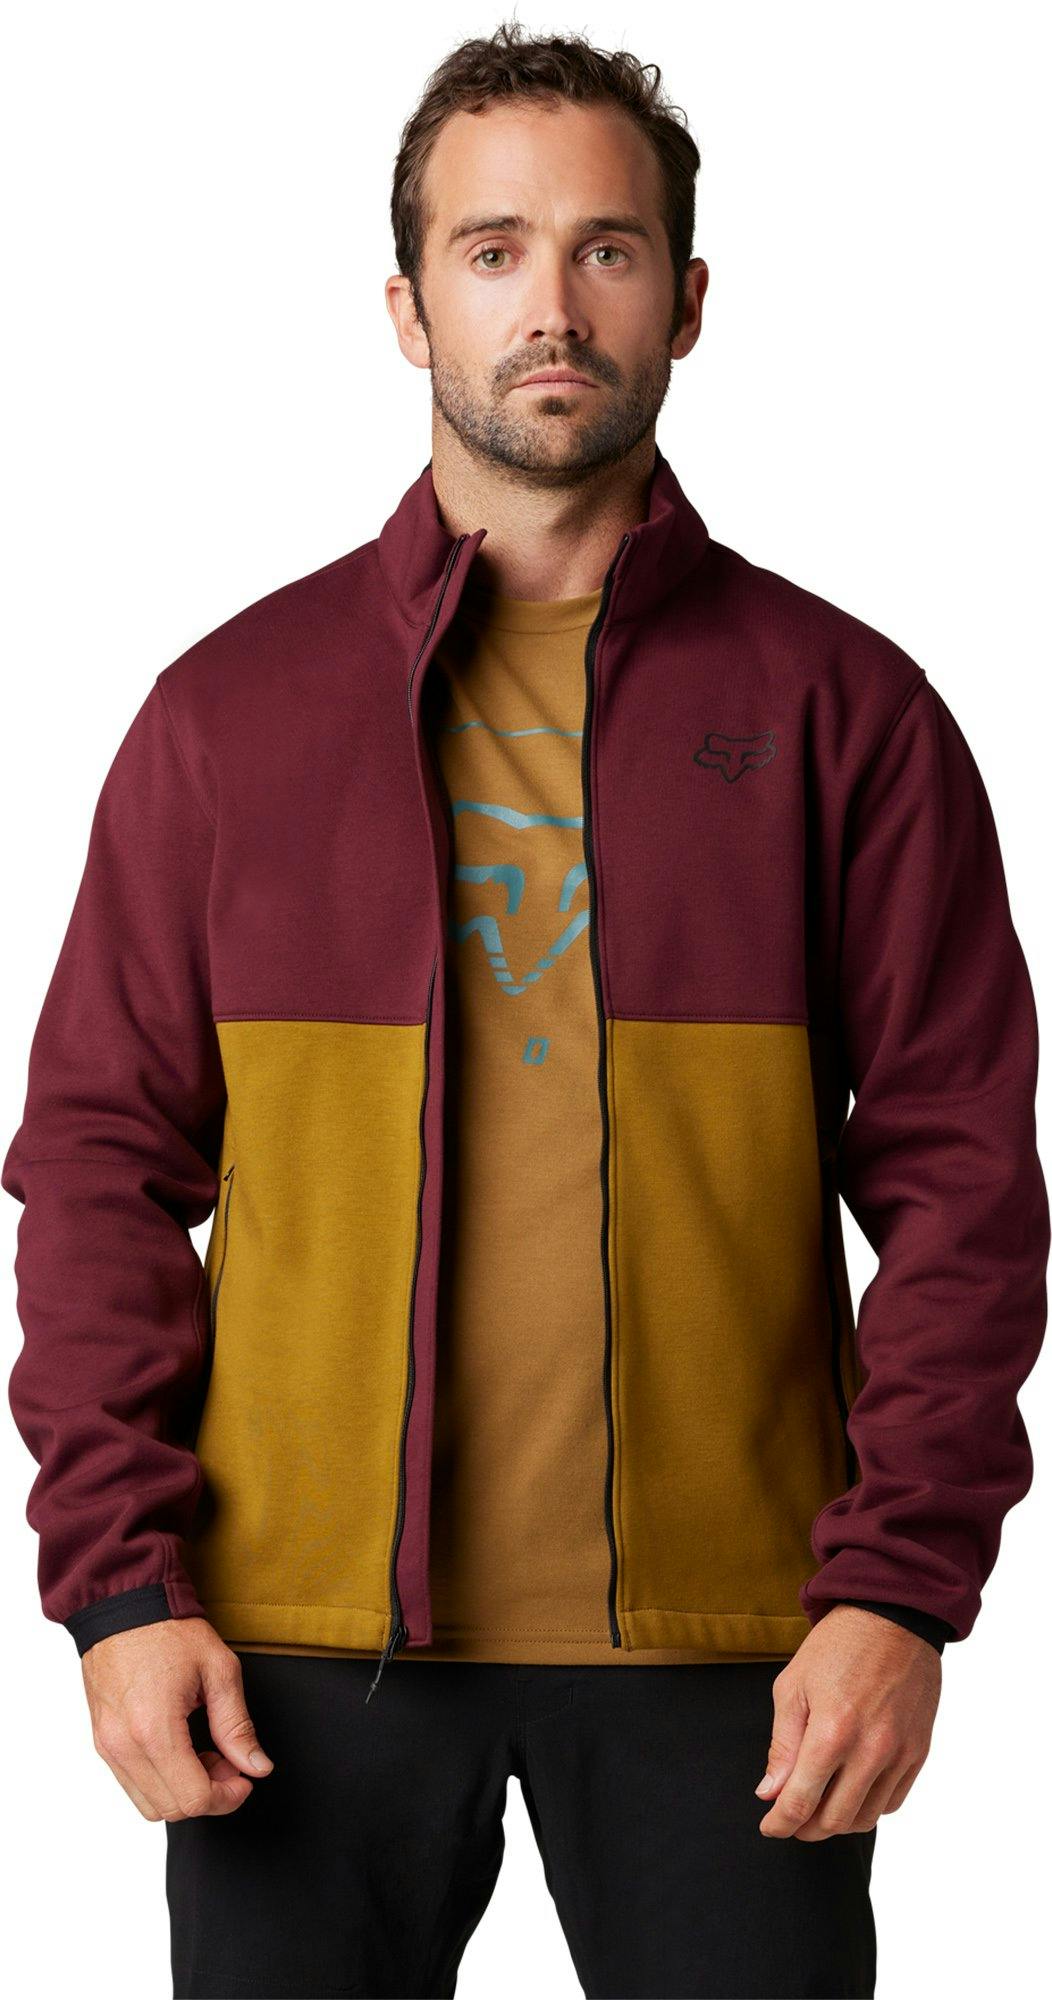 Product gallery image number 6 for product Ranger Fire Fleece Crew Sweatshirt - Men's